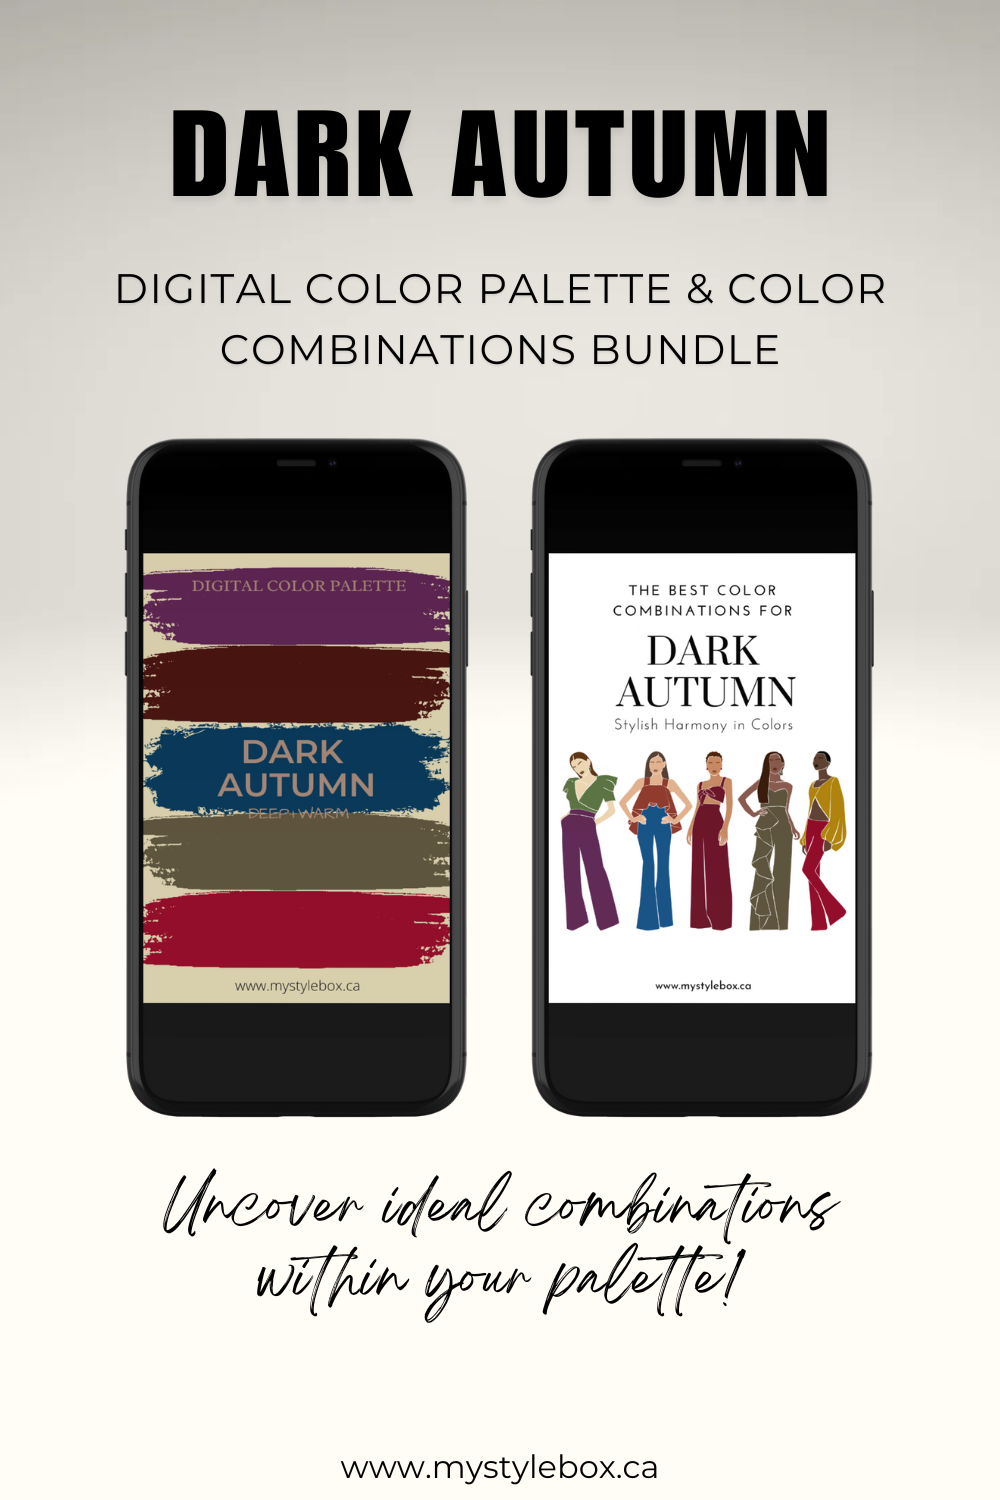 Dark Autumn Season Digital Color Palette and Color Combinations Bundle